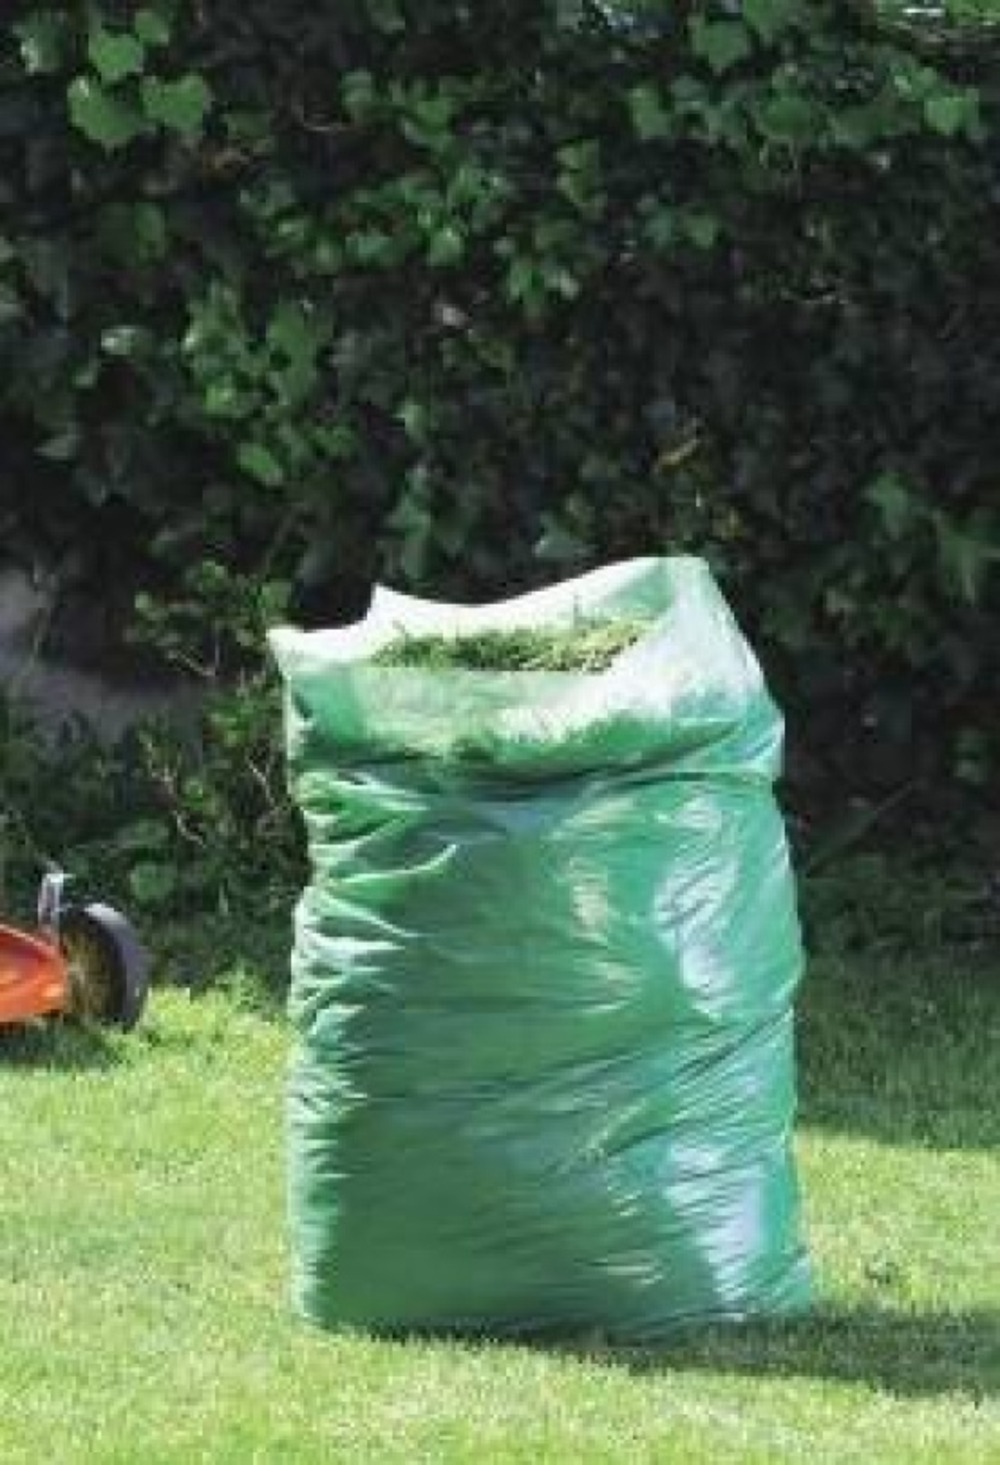 Sac de déchets verts réutilisable 252L Nortene - Jardideco